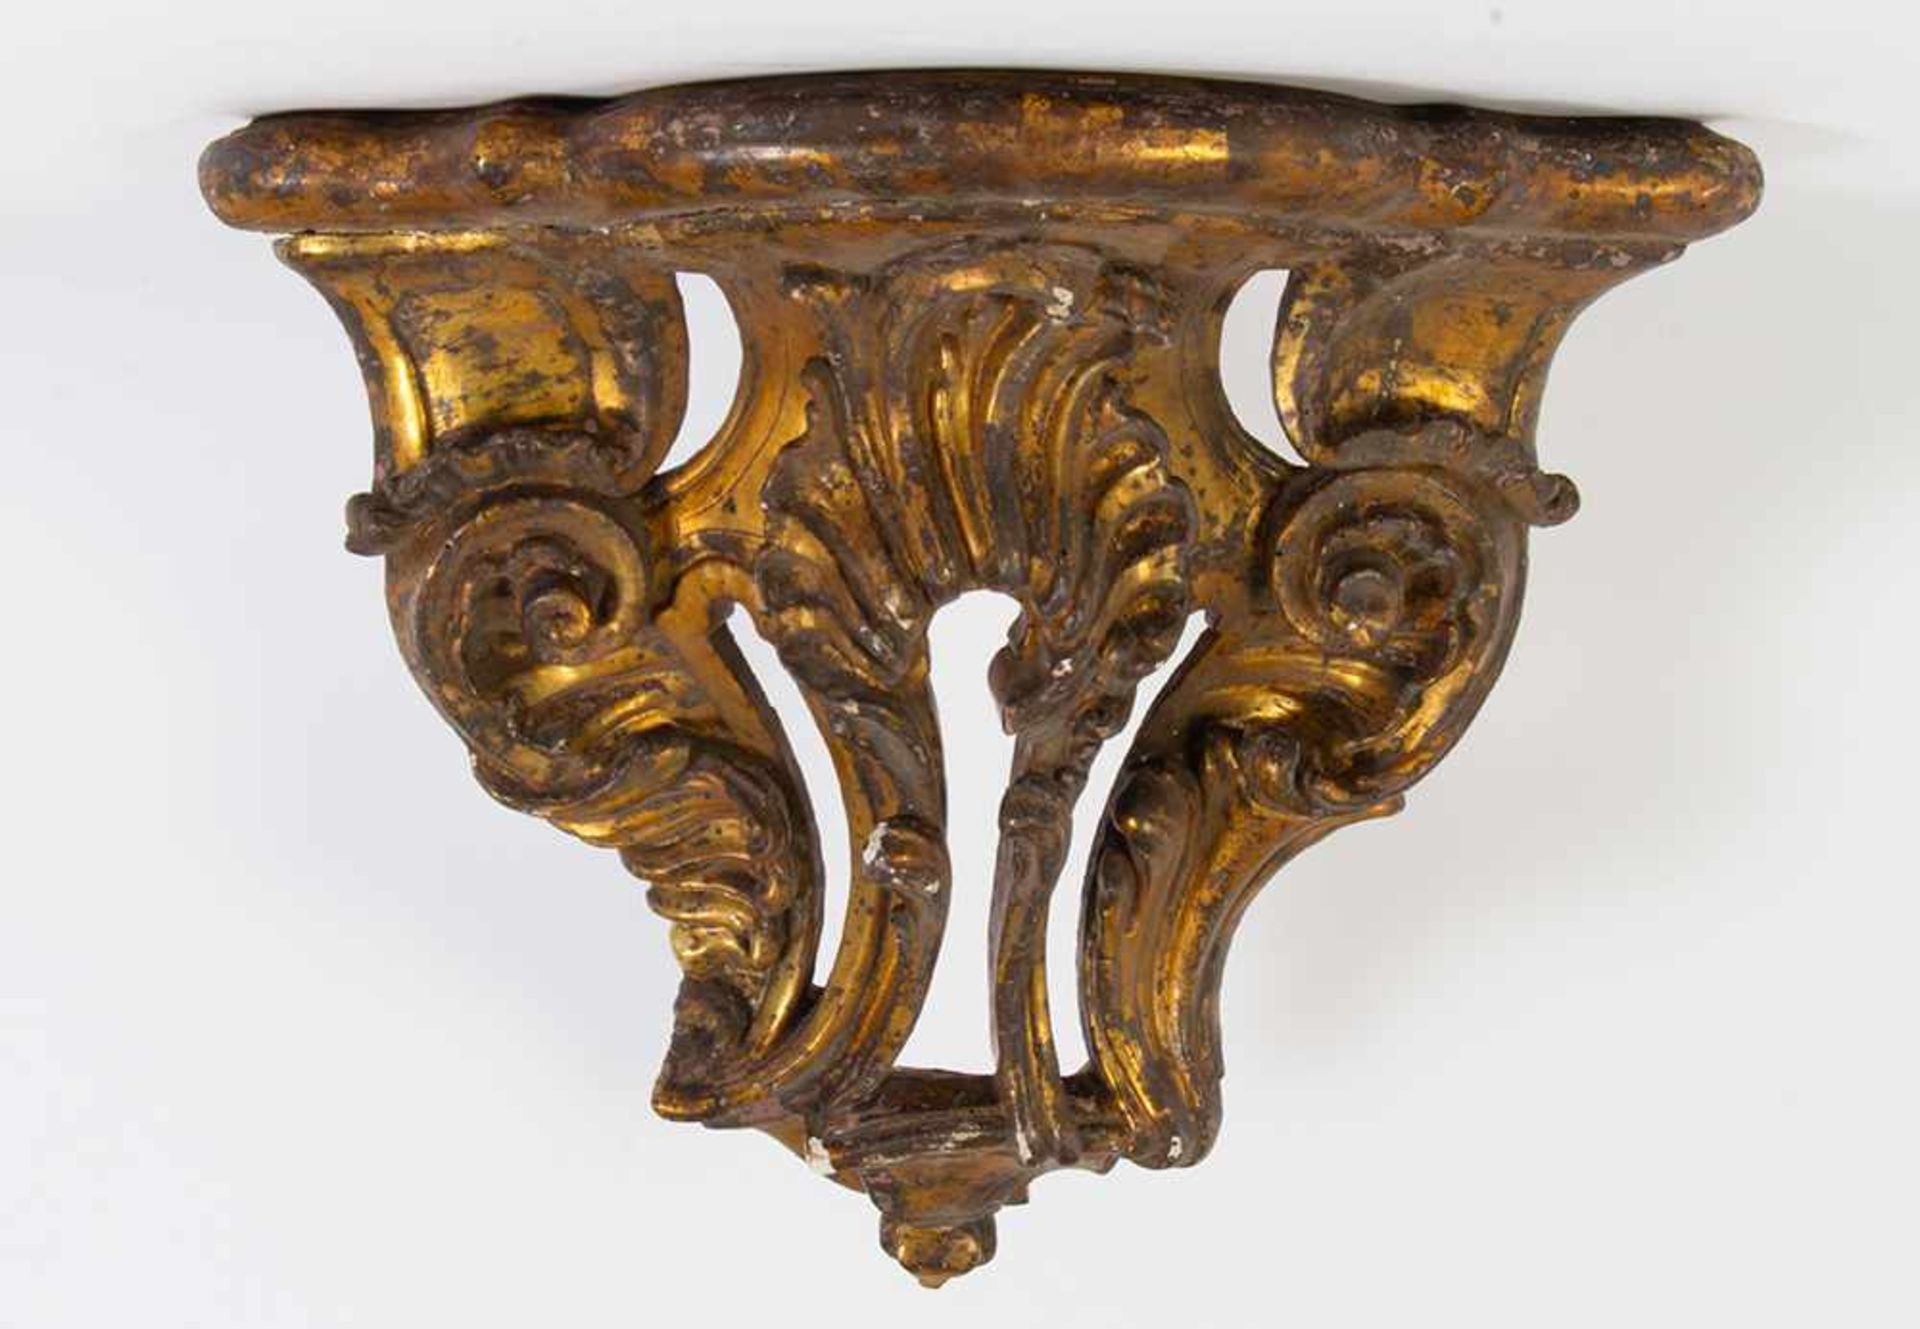 Consola rinconera Carlos IV en madera tallada y dorada. España, finales del siglo XVIII.Consol